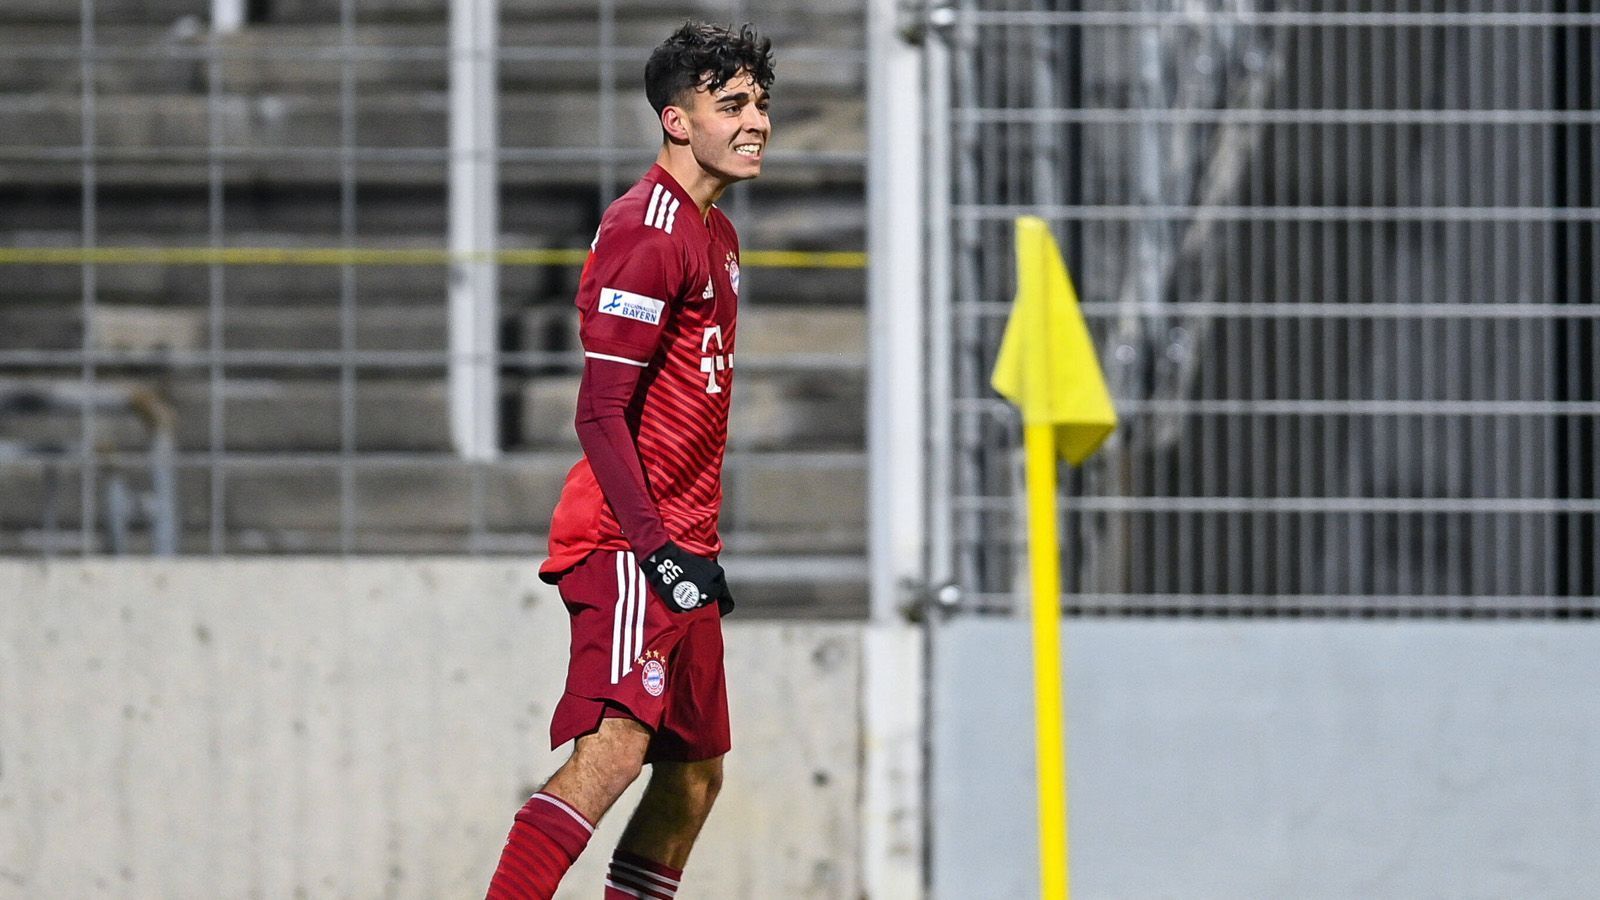 
                <strong>Lucas Copado (17 Jahre, Sturm)</strong><br>
                Copado kam 2016 zum aus der Unterhachinger Jugend zum FC Bayern. Im Sommer 2021 wurde er von der U17 in die zweite Mannschaft befördert. Dort erzielte der Stürmer in 13 Spielen drei Tore und legte fünf weitere auf. In der U19 steht er bei vier Treffern in zwei Spielen. Der 17-Jährige, der am Montag volljährig wird, gehört auch zum Kader der deutschen U18-Nationalmannschaft. Sein Vertrag in München läuft noch bis 2024. Er ist der Sohn von Ex-Profi Francisco Copado und der Neffe von Sportvorstand Hasan Salihamidzic.
              